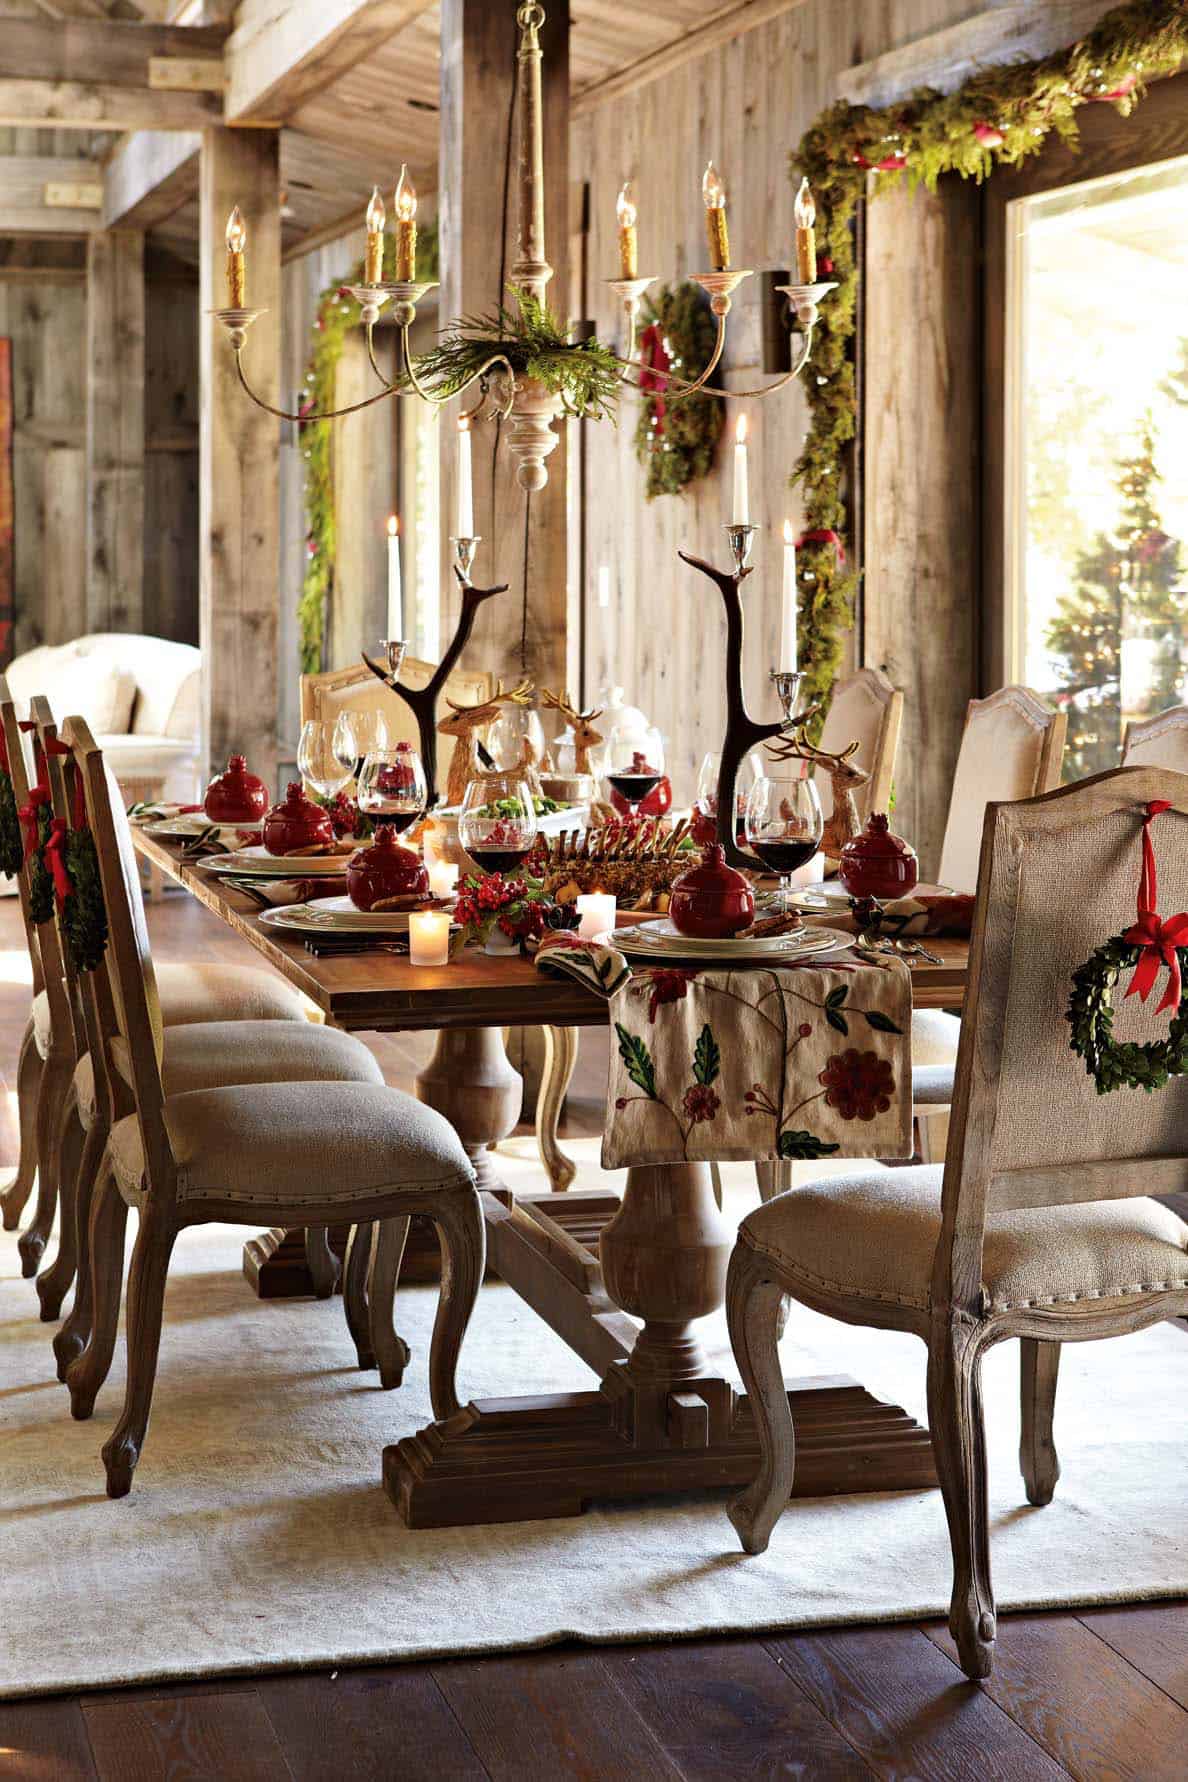 christmas-table-decor-ideas